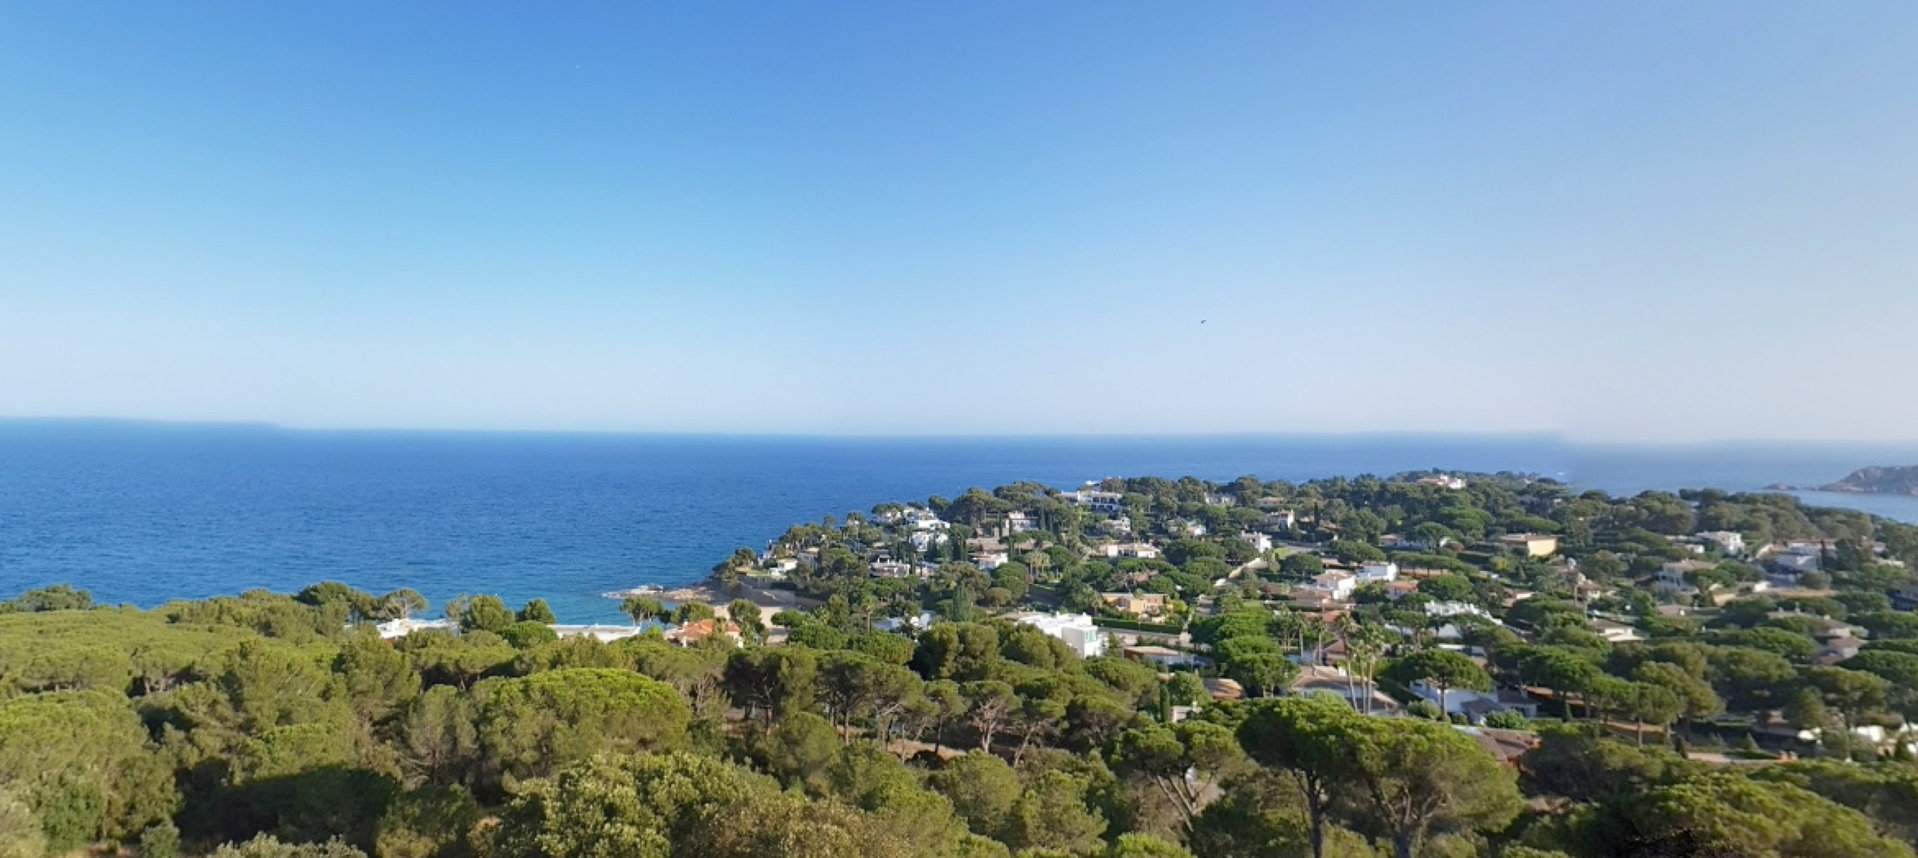 Els 10 racons amb vistes increïbles de la Costa Brava